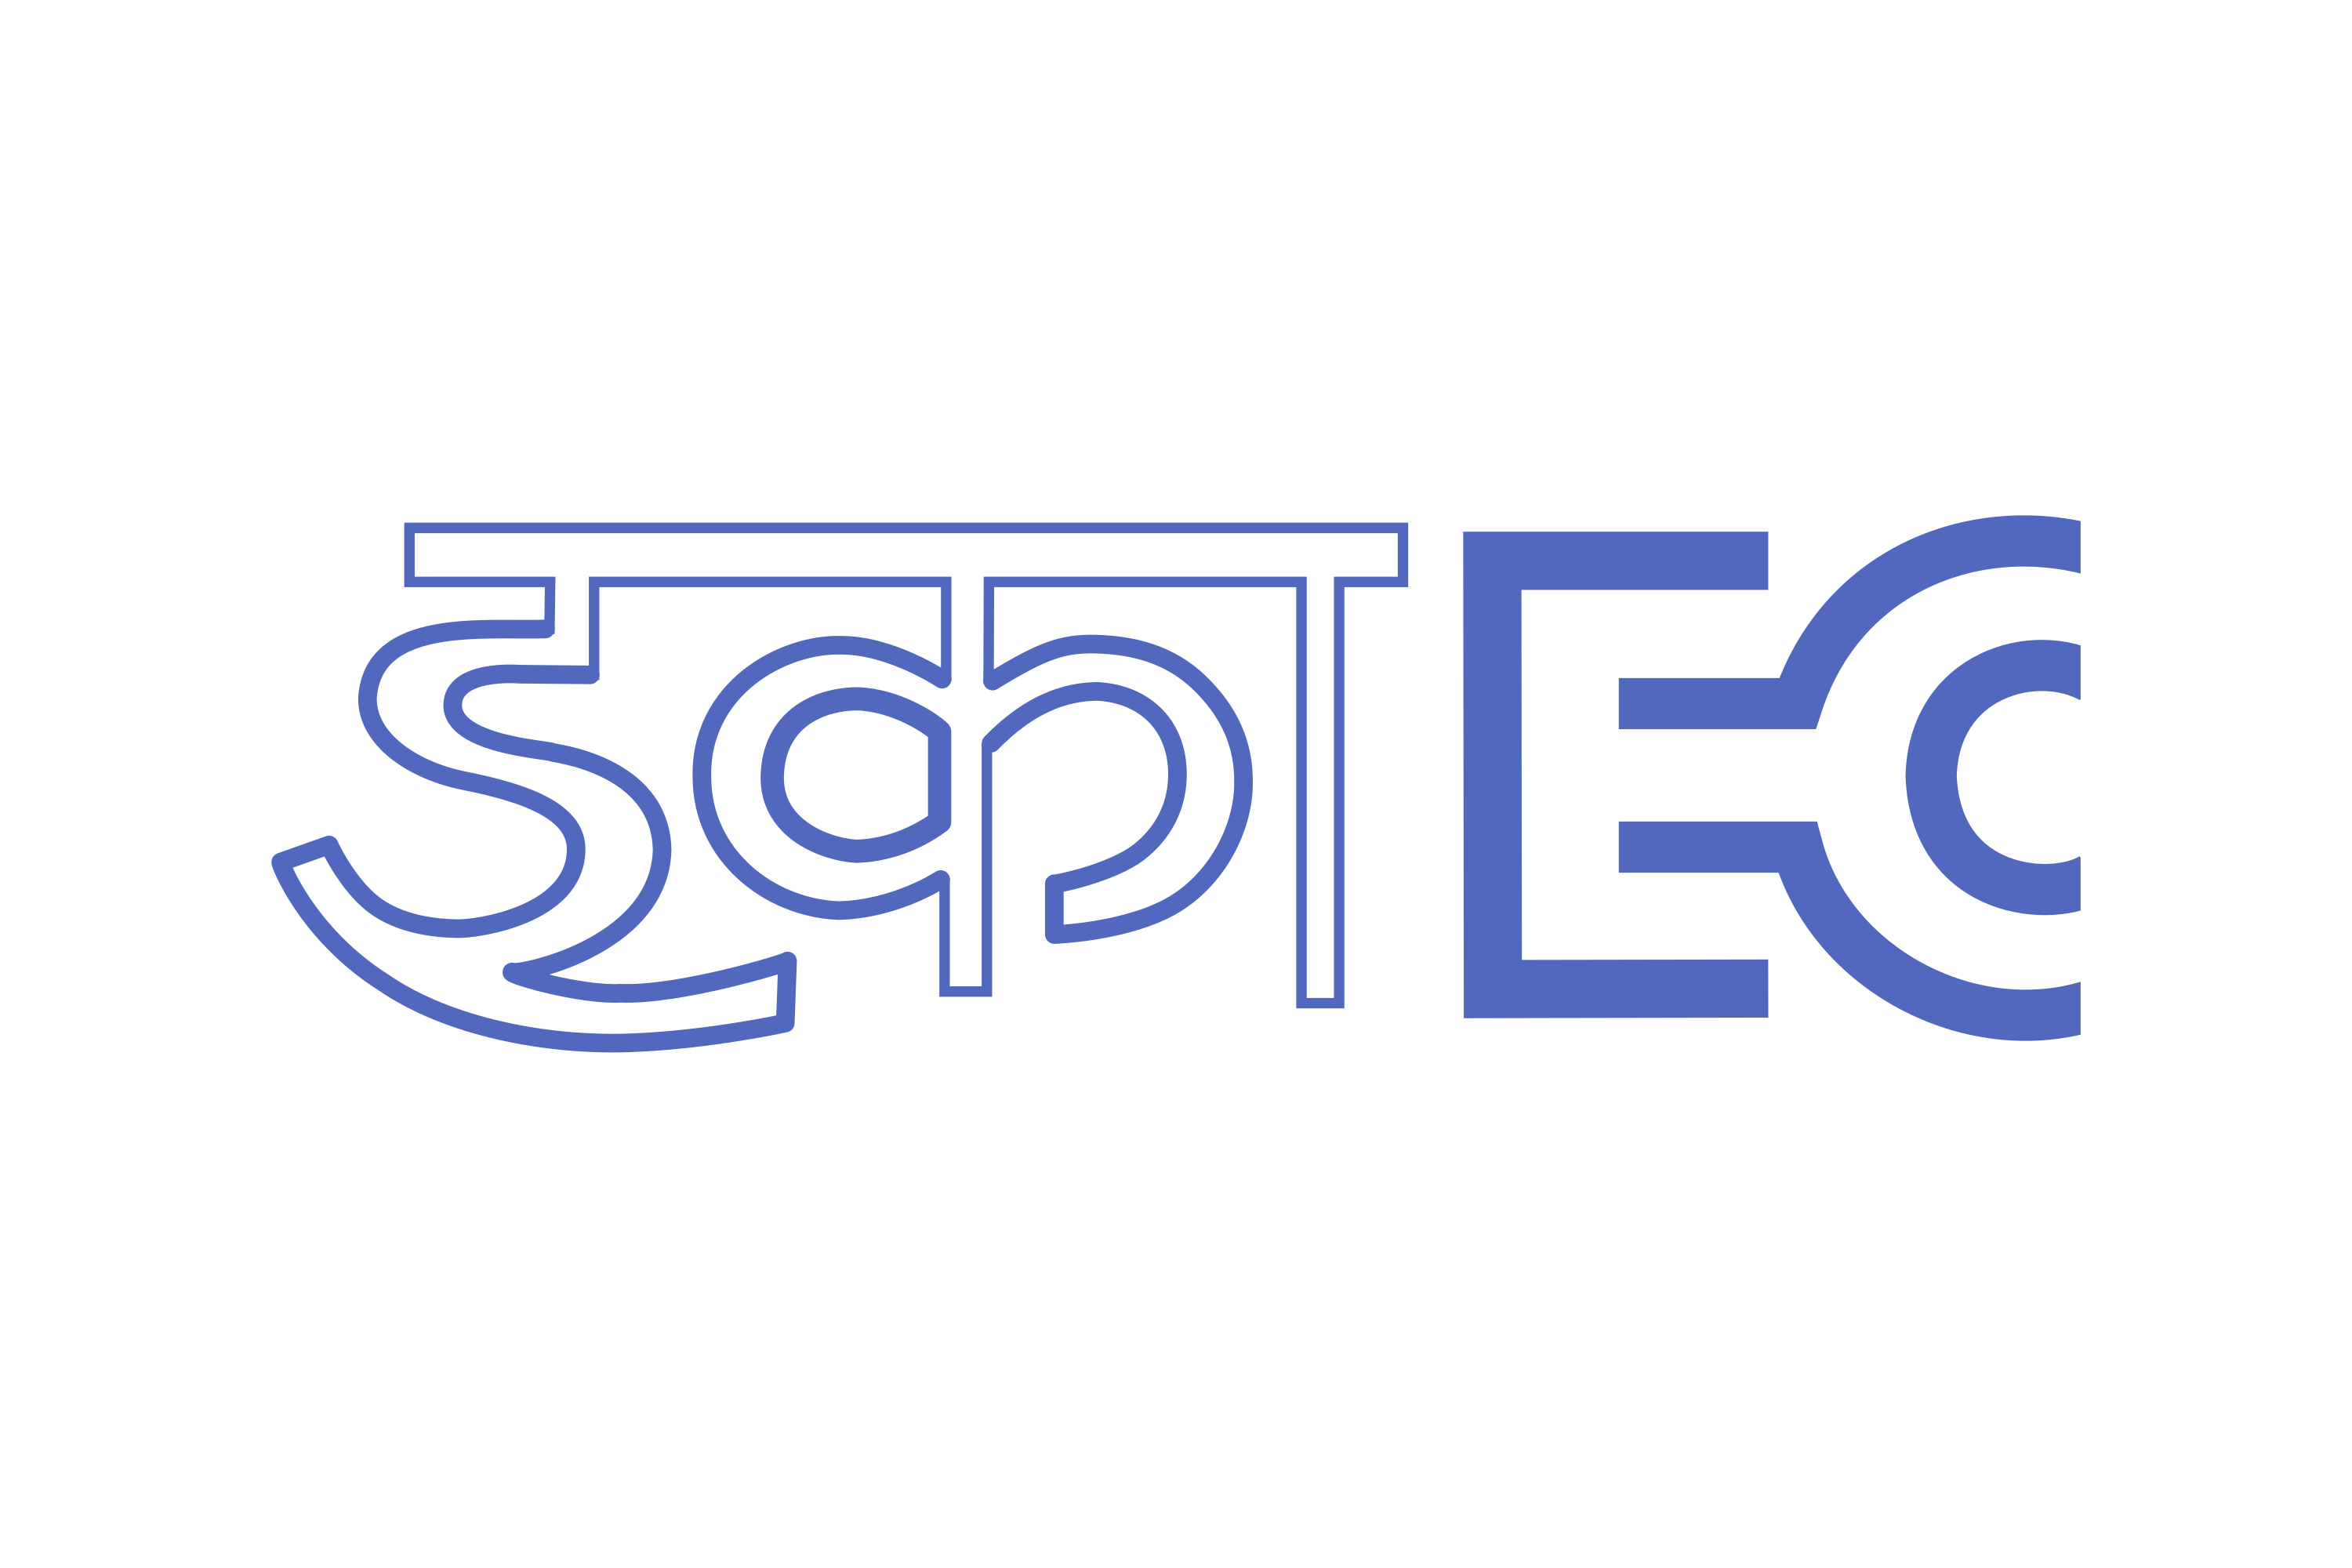 Electronics Corporation of India Limited Logo